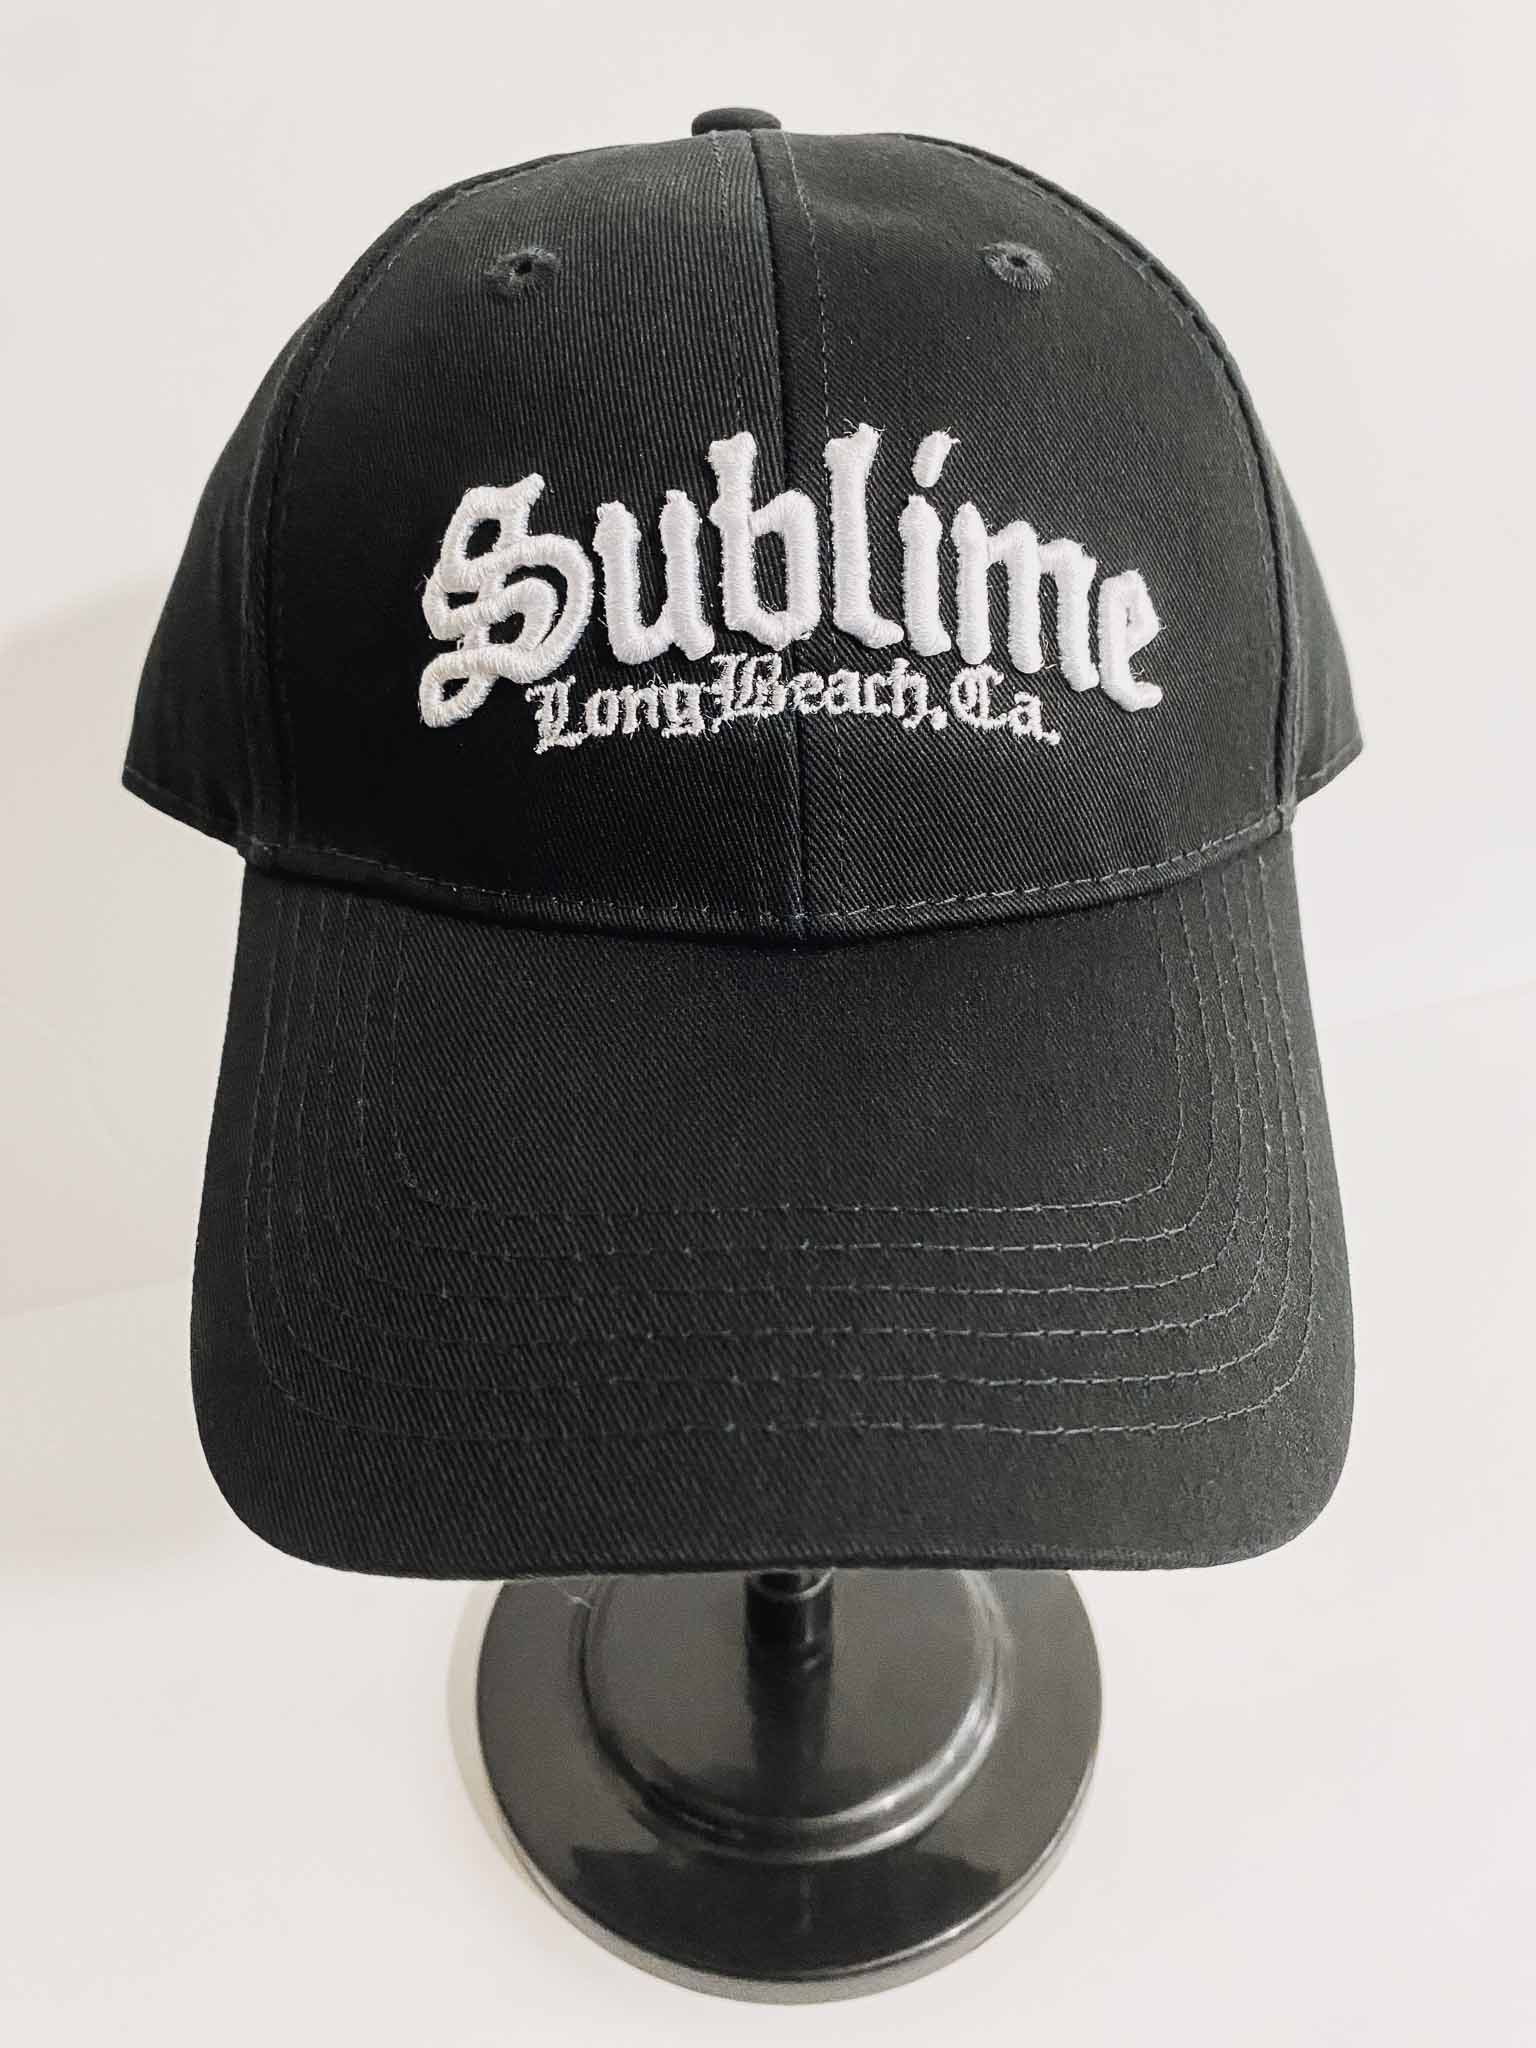 Sublime Logo Baseball Cap, Official Merch